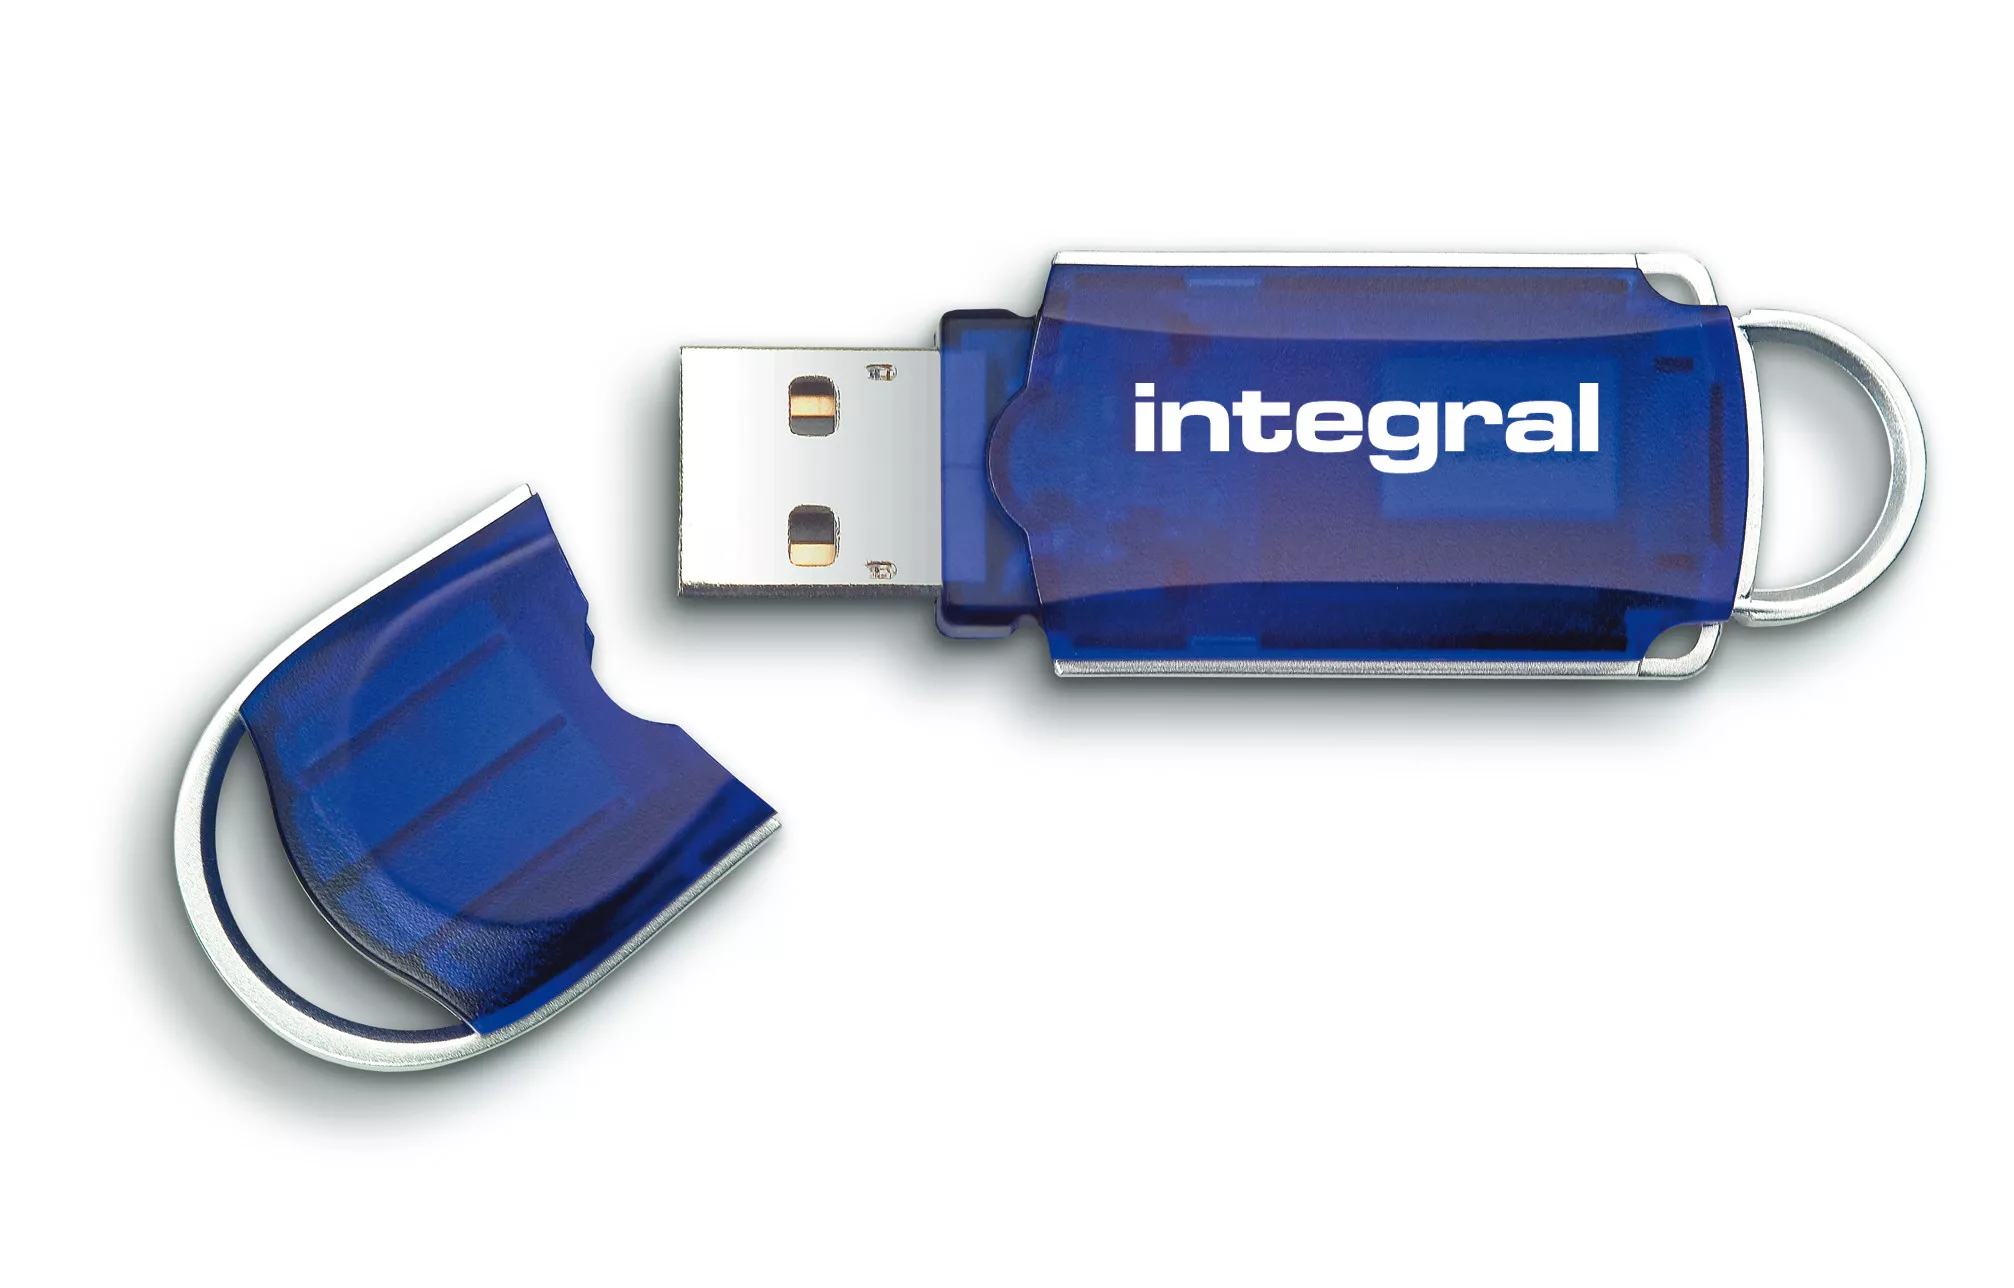 Achat Integral 64GB USB2.0 DRIVE COURIER BLUE INTEGRAL au meilleur prix